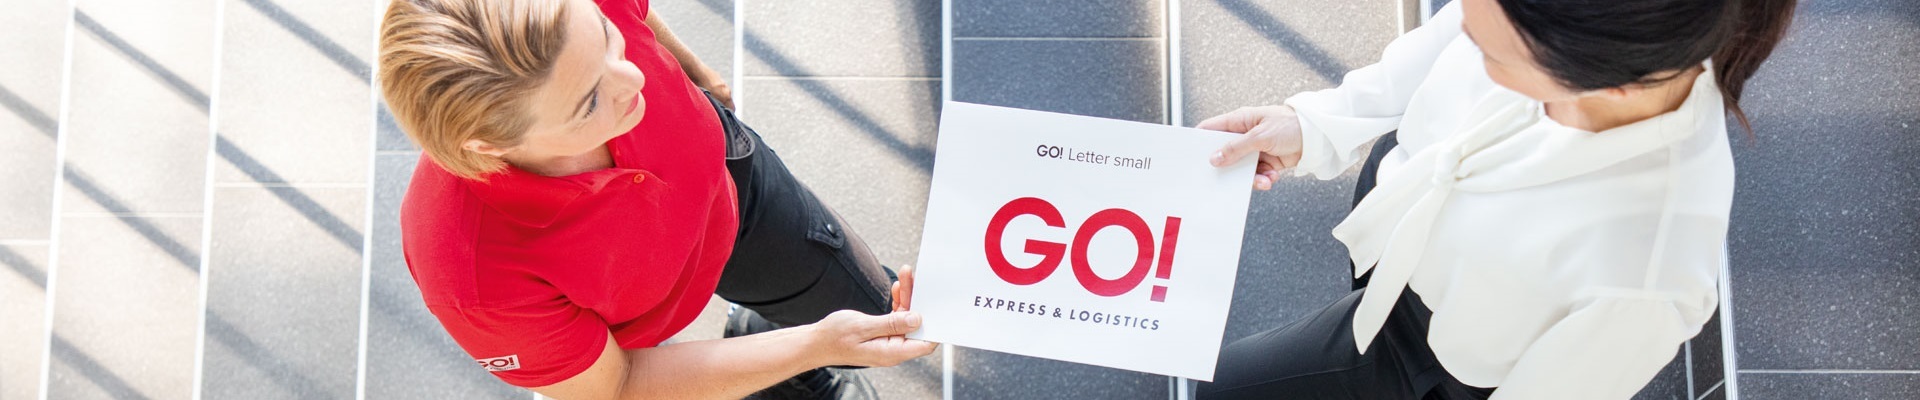 GO! Kurierin übergibt Letter an eine Geschäftsfrau auf einer Treppe